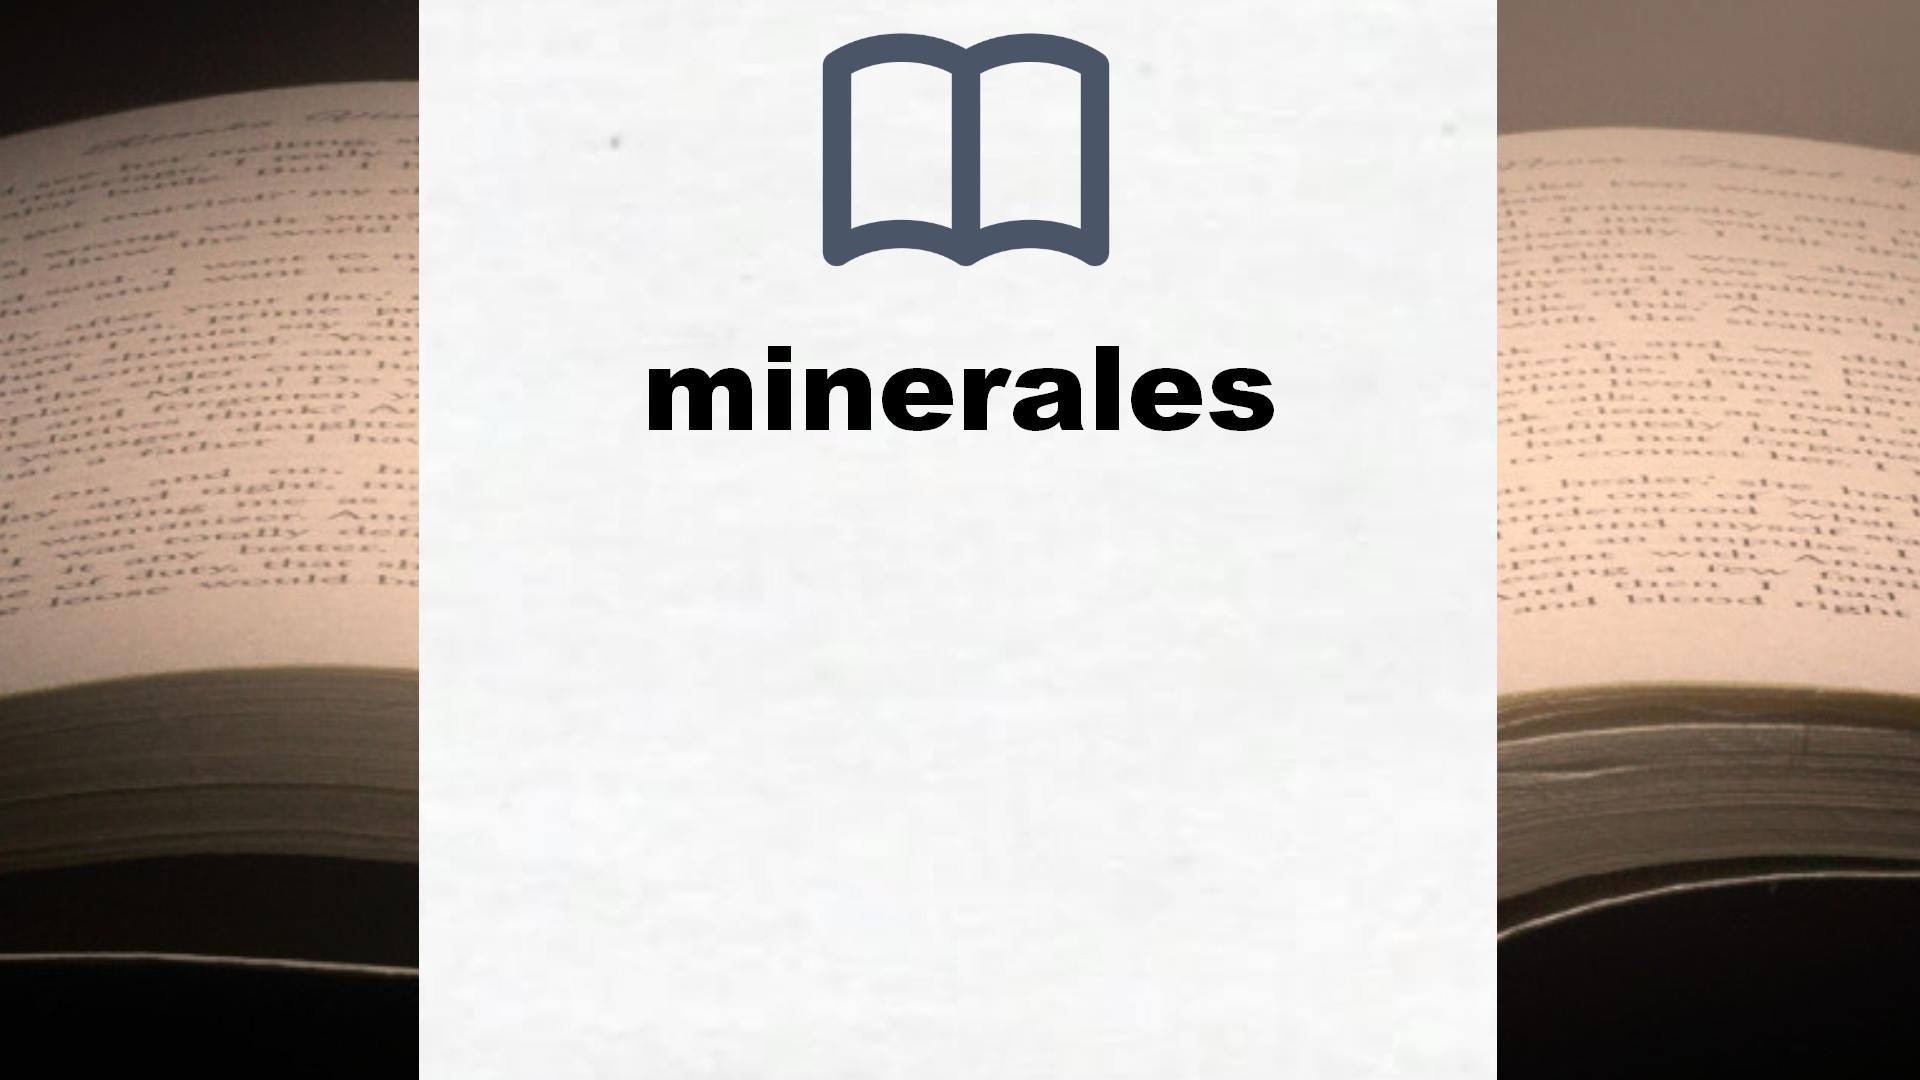 Libros sobre minerales